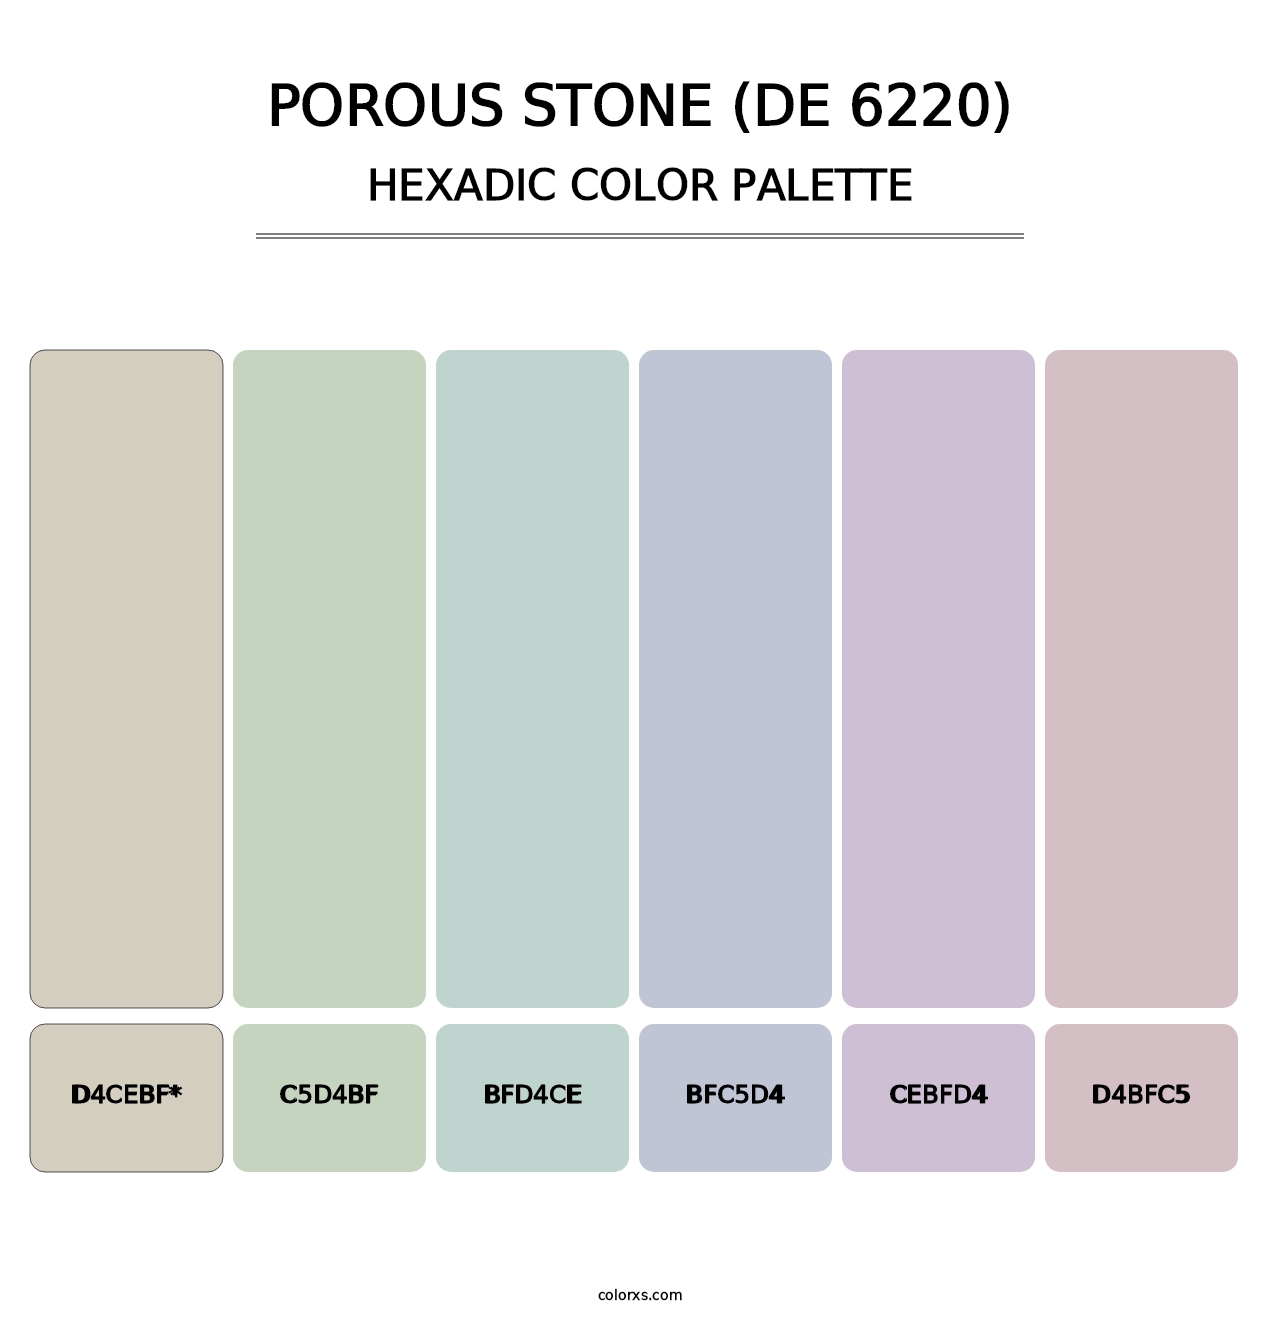 Porous Stone (DE 6220) - Hexadic Color Palette